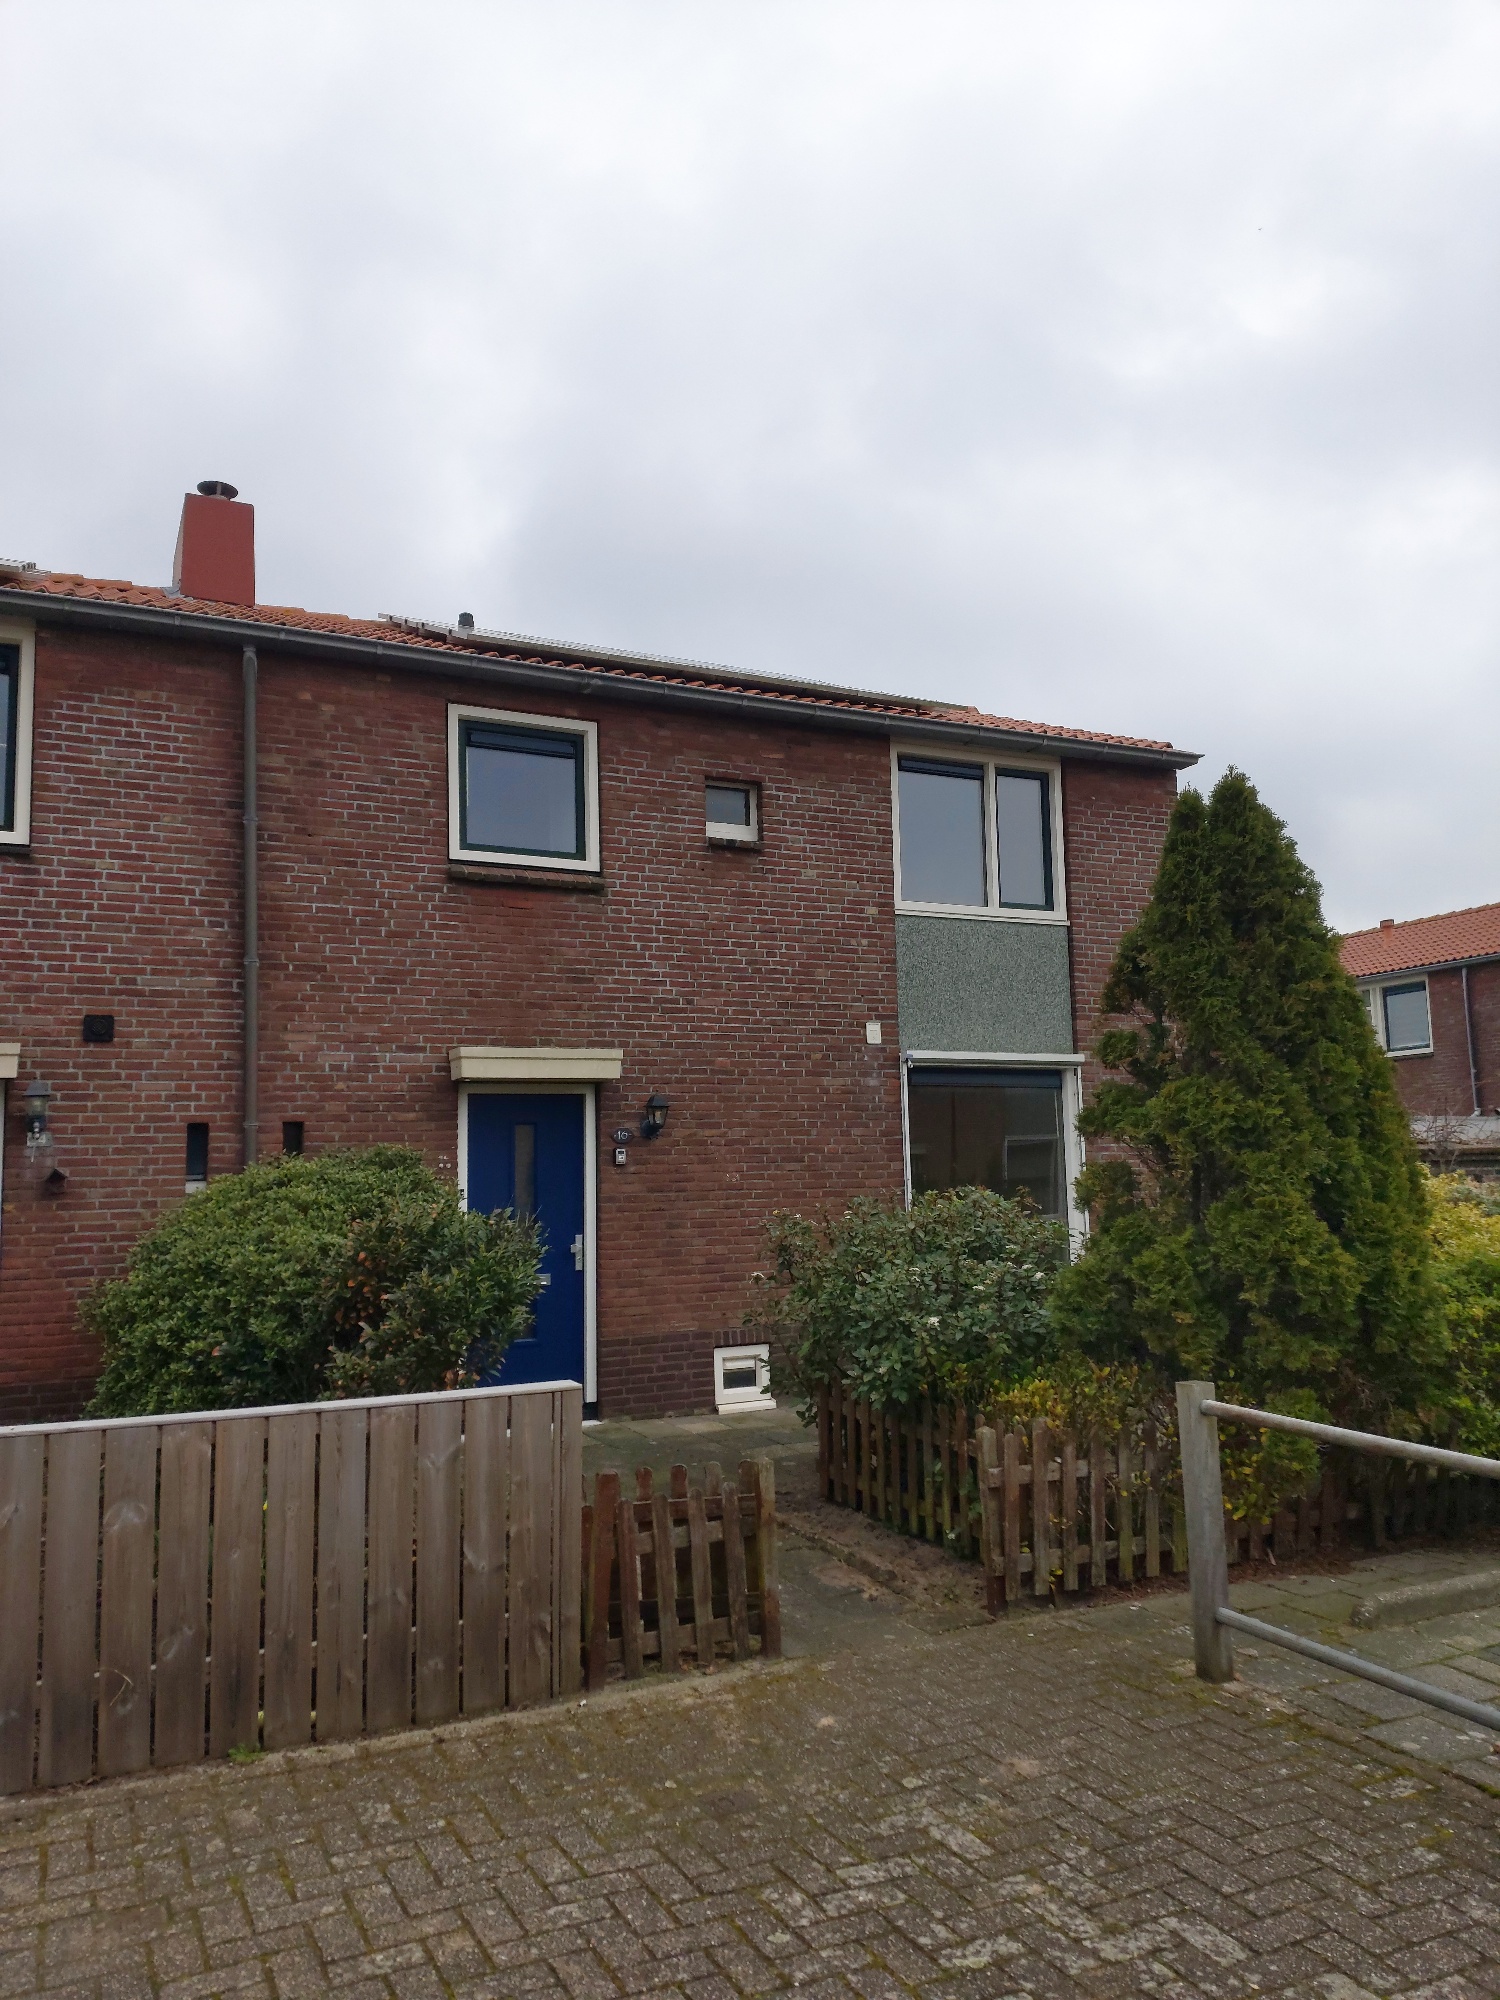 Kersappelstraat 16, 2201 NM Noordwijk, Nederland